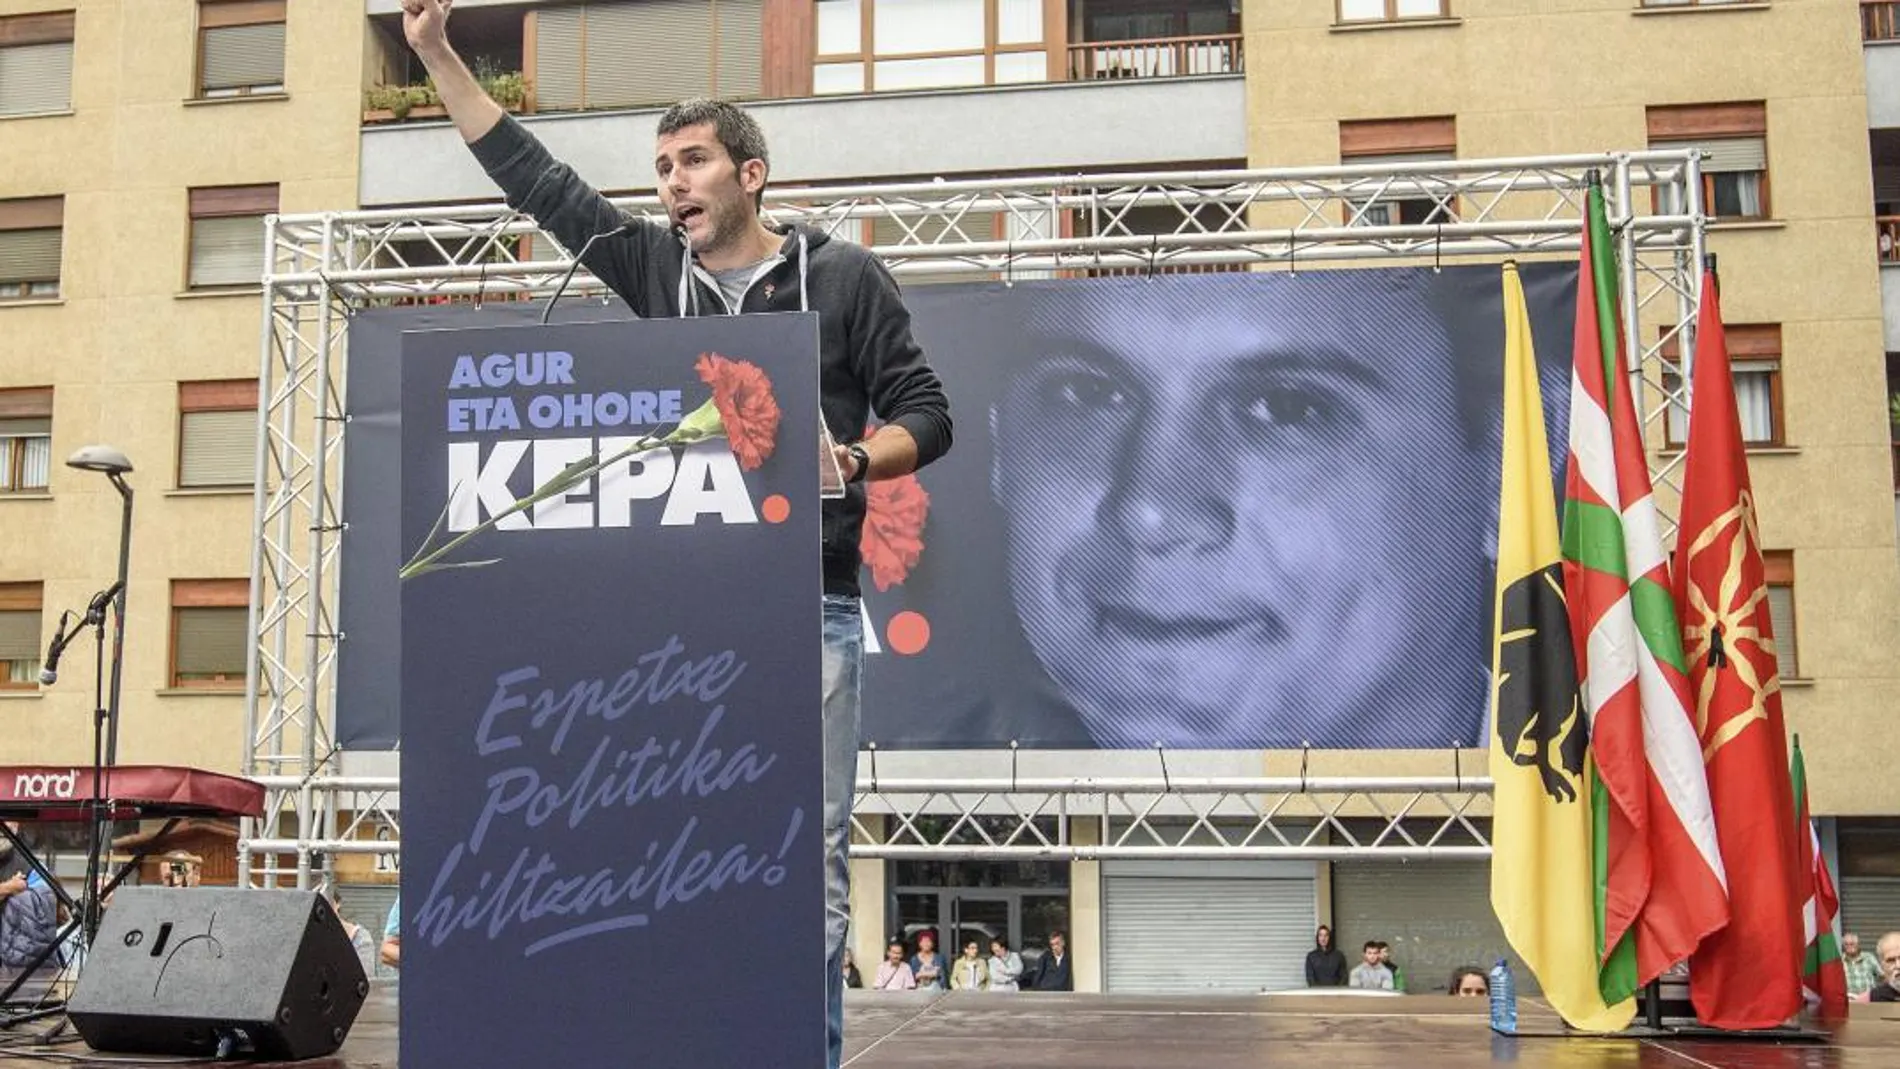 Manifestación celebrada en agosto en Galdakao, Bizkaia, convocada por la izquierda abertzale, para protestar por la política penitenciaria tras la muerte del preso de ETA Kepa del Hoyo de un infarto en la prisión de Badajoz